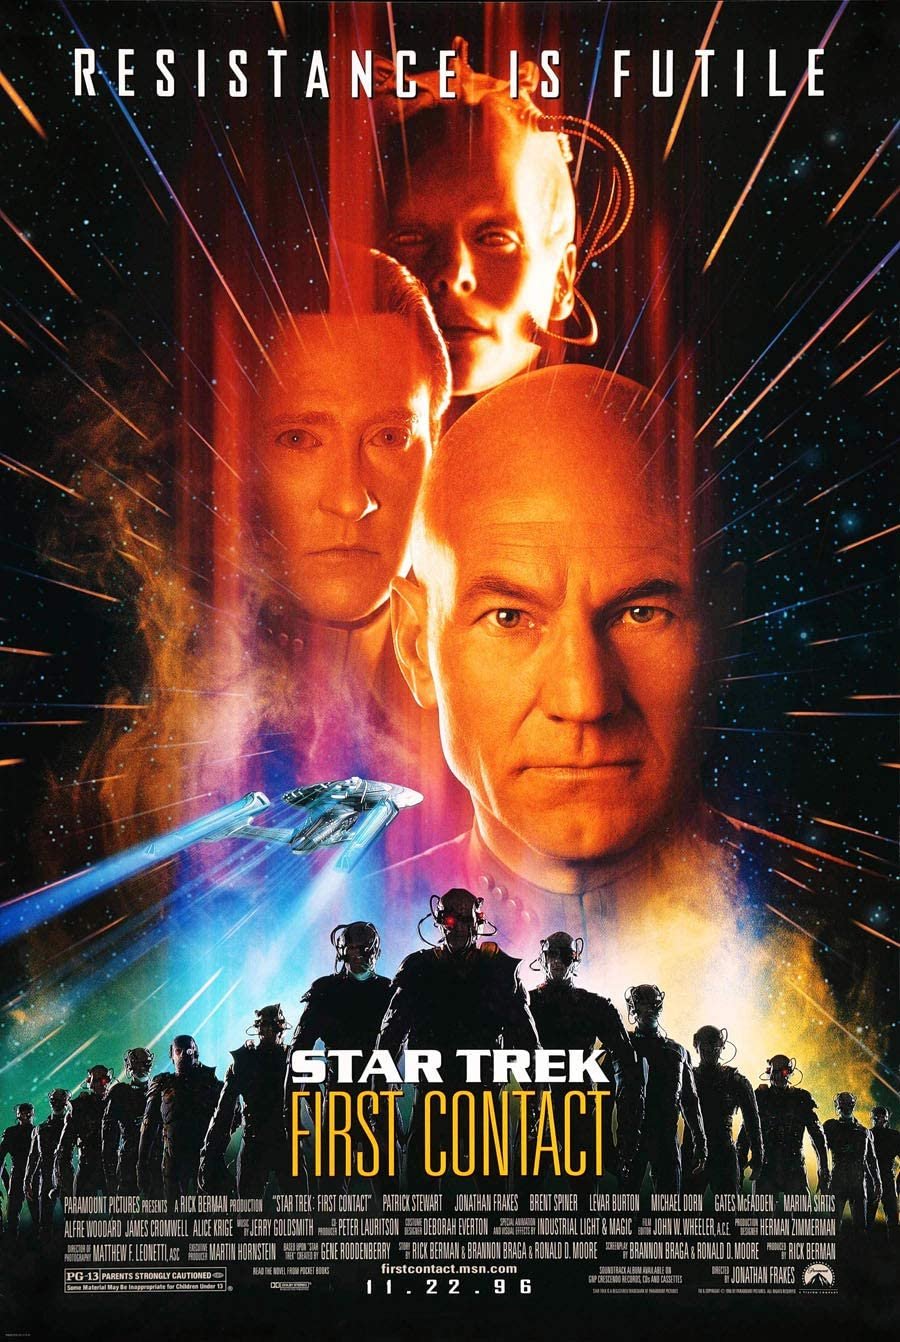 Star Trek - ia do Primeiro Contato (First Contact Day)